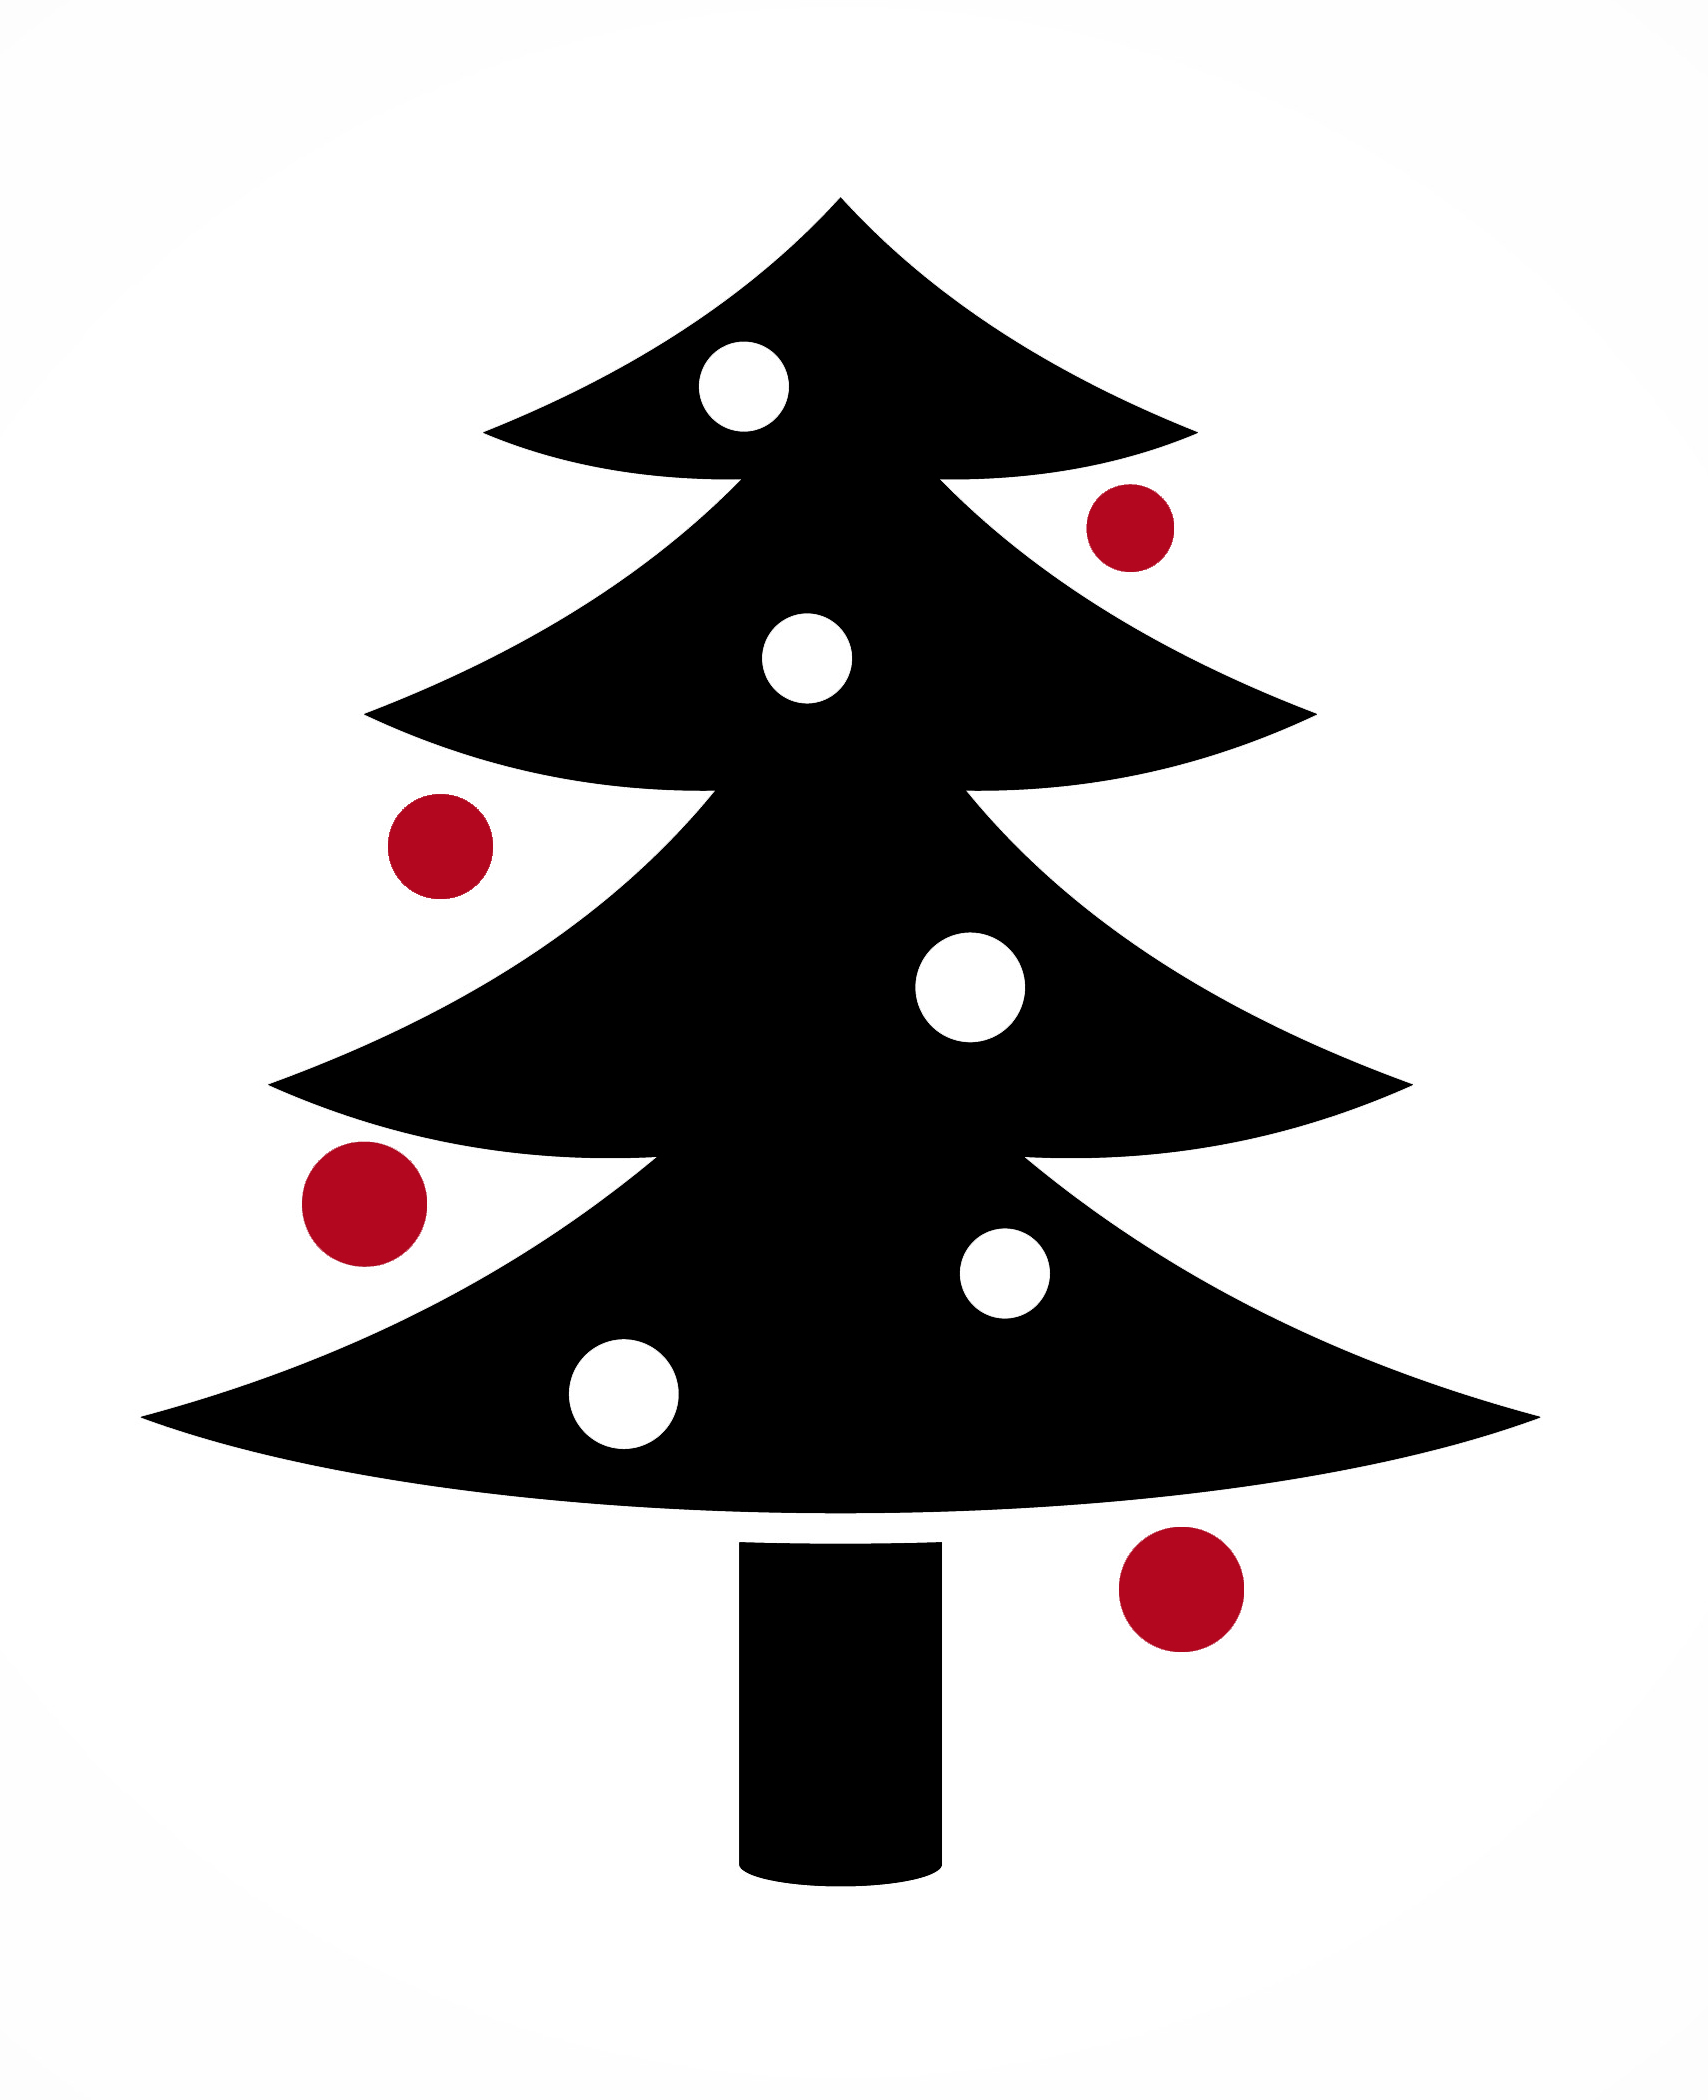 Pictogramme représentant un sapin de Noël noir avec des boules rouges et blanches